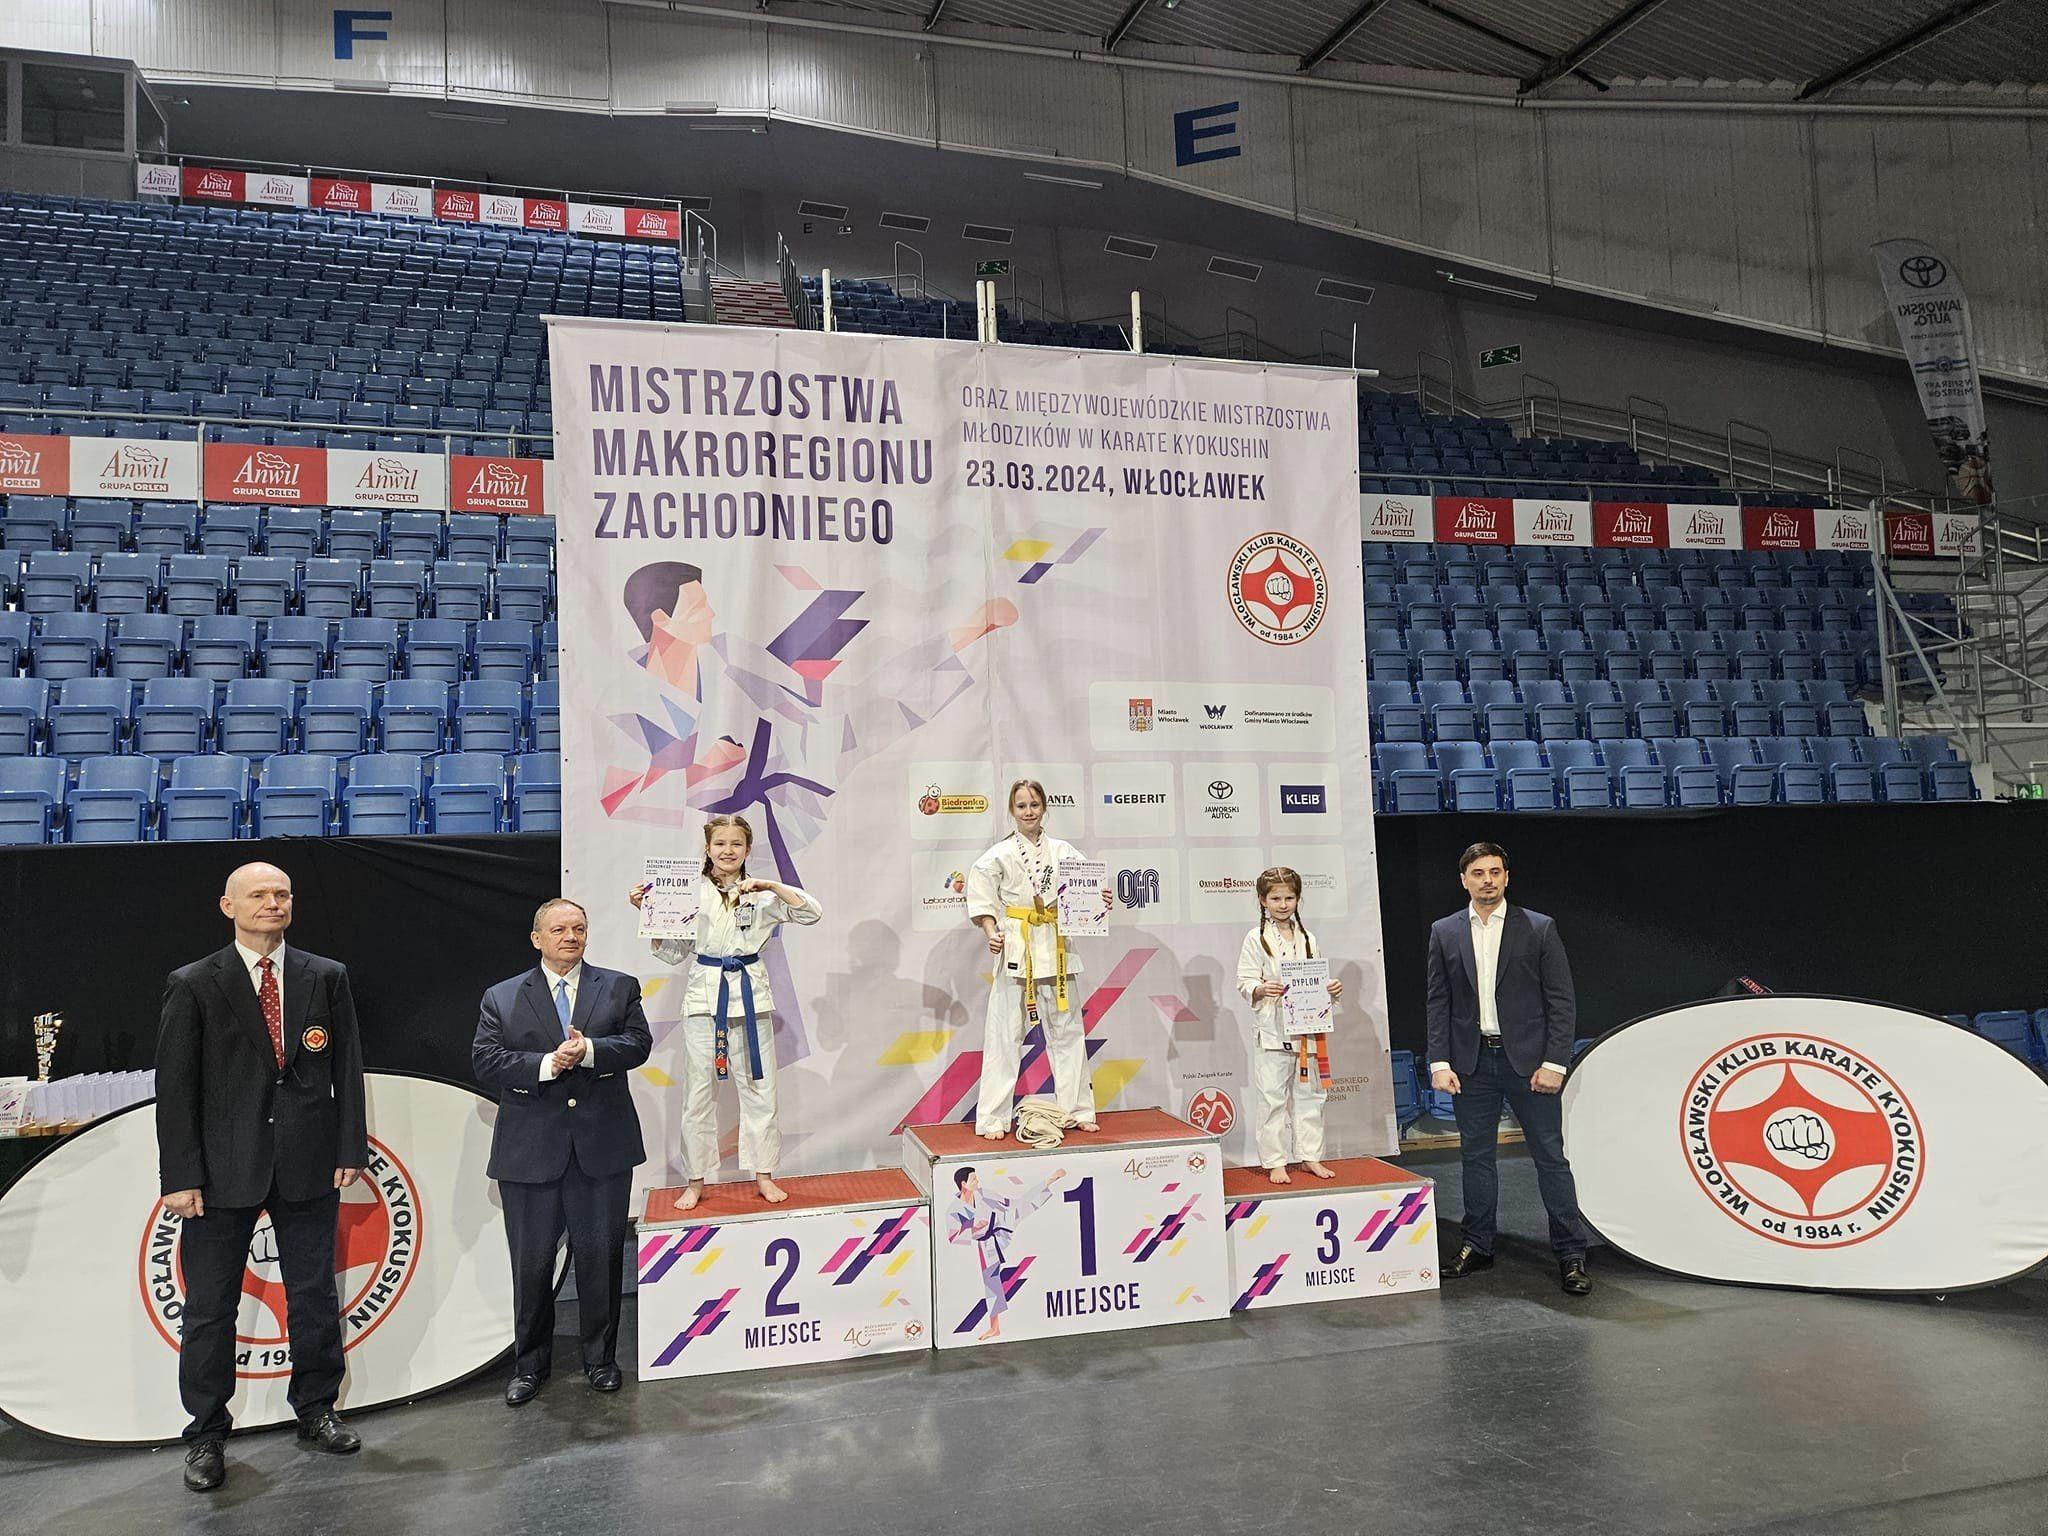 Zdj. nr. 10. Mistrzostwa Makroregionu Zachodniego Karate Kyokushin - 23 marca 2024 r., Włocławek